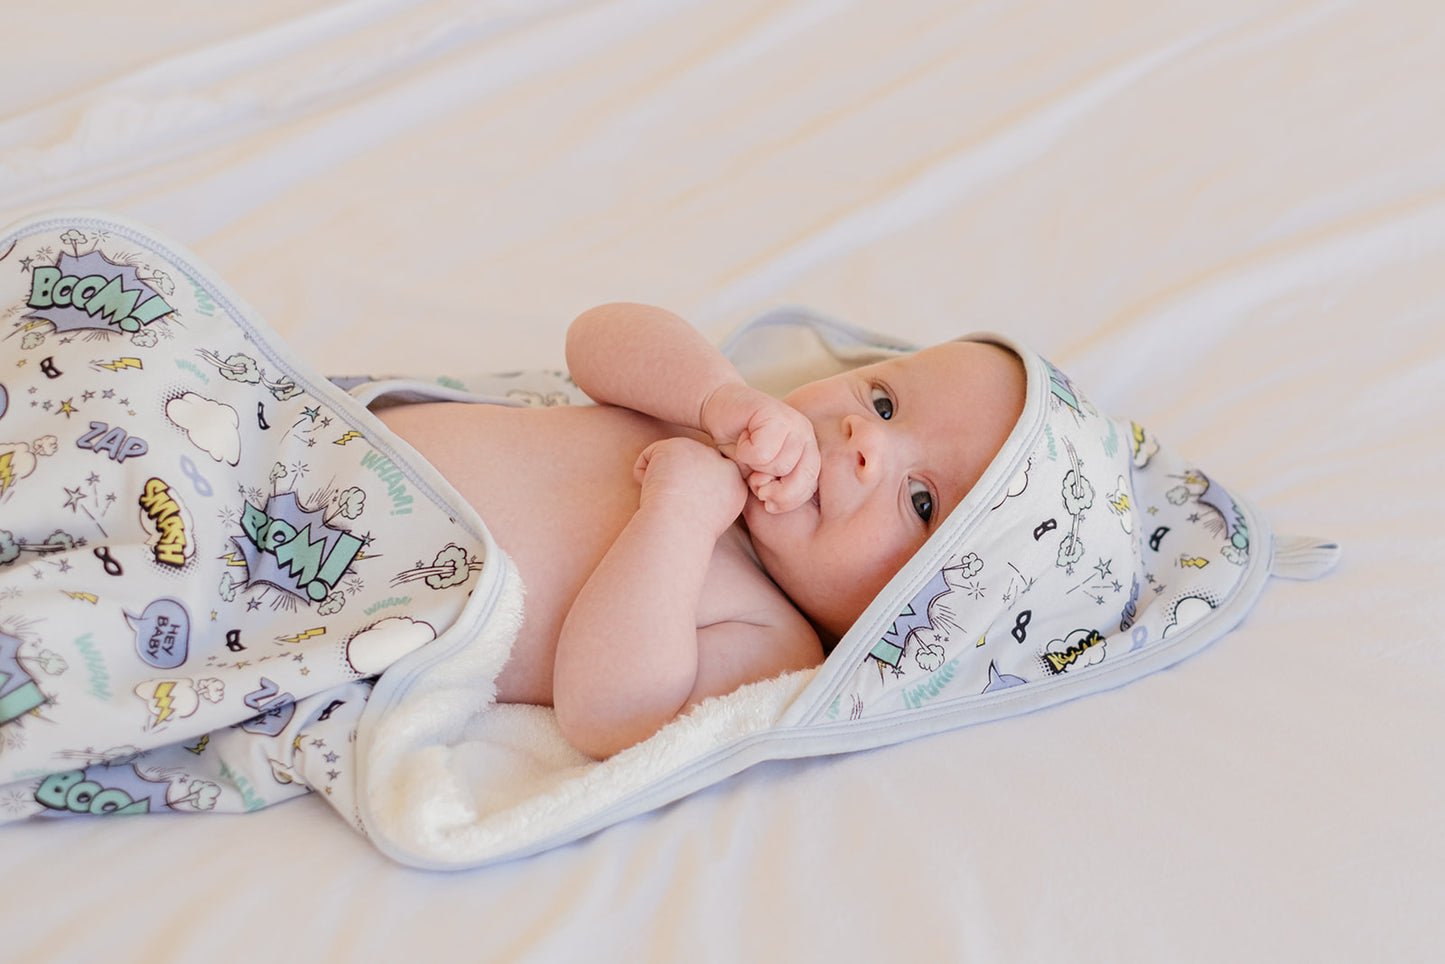 BABY HOODED TOWEL - SUPERHERO BLUE